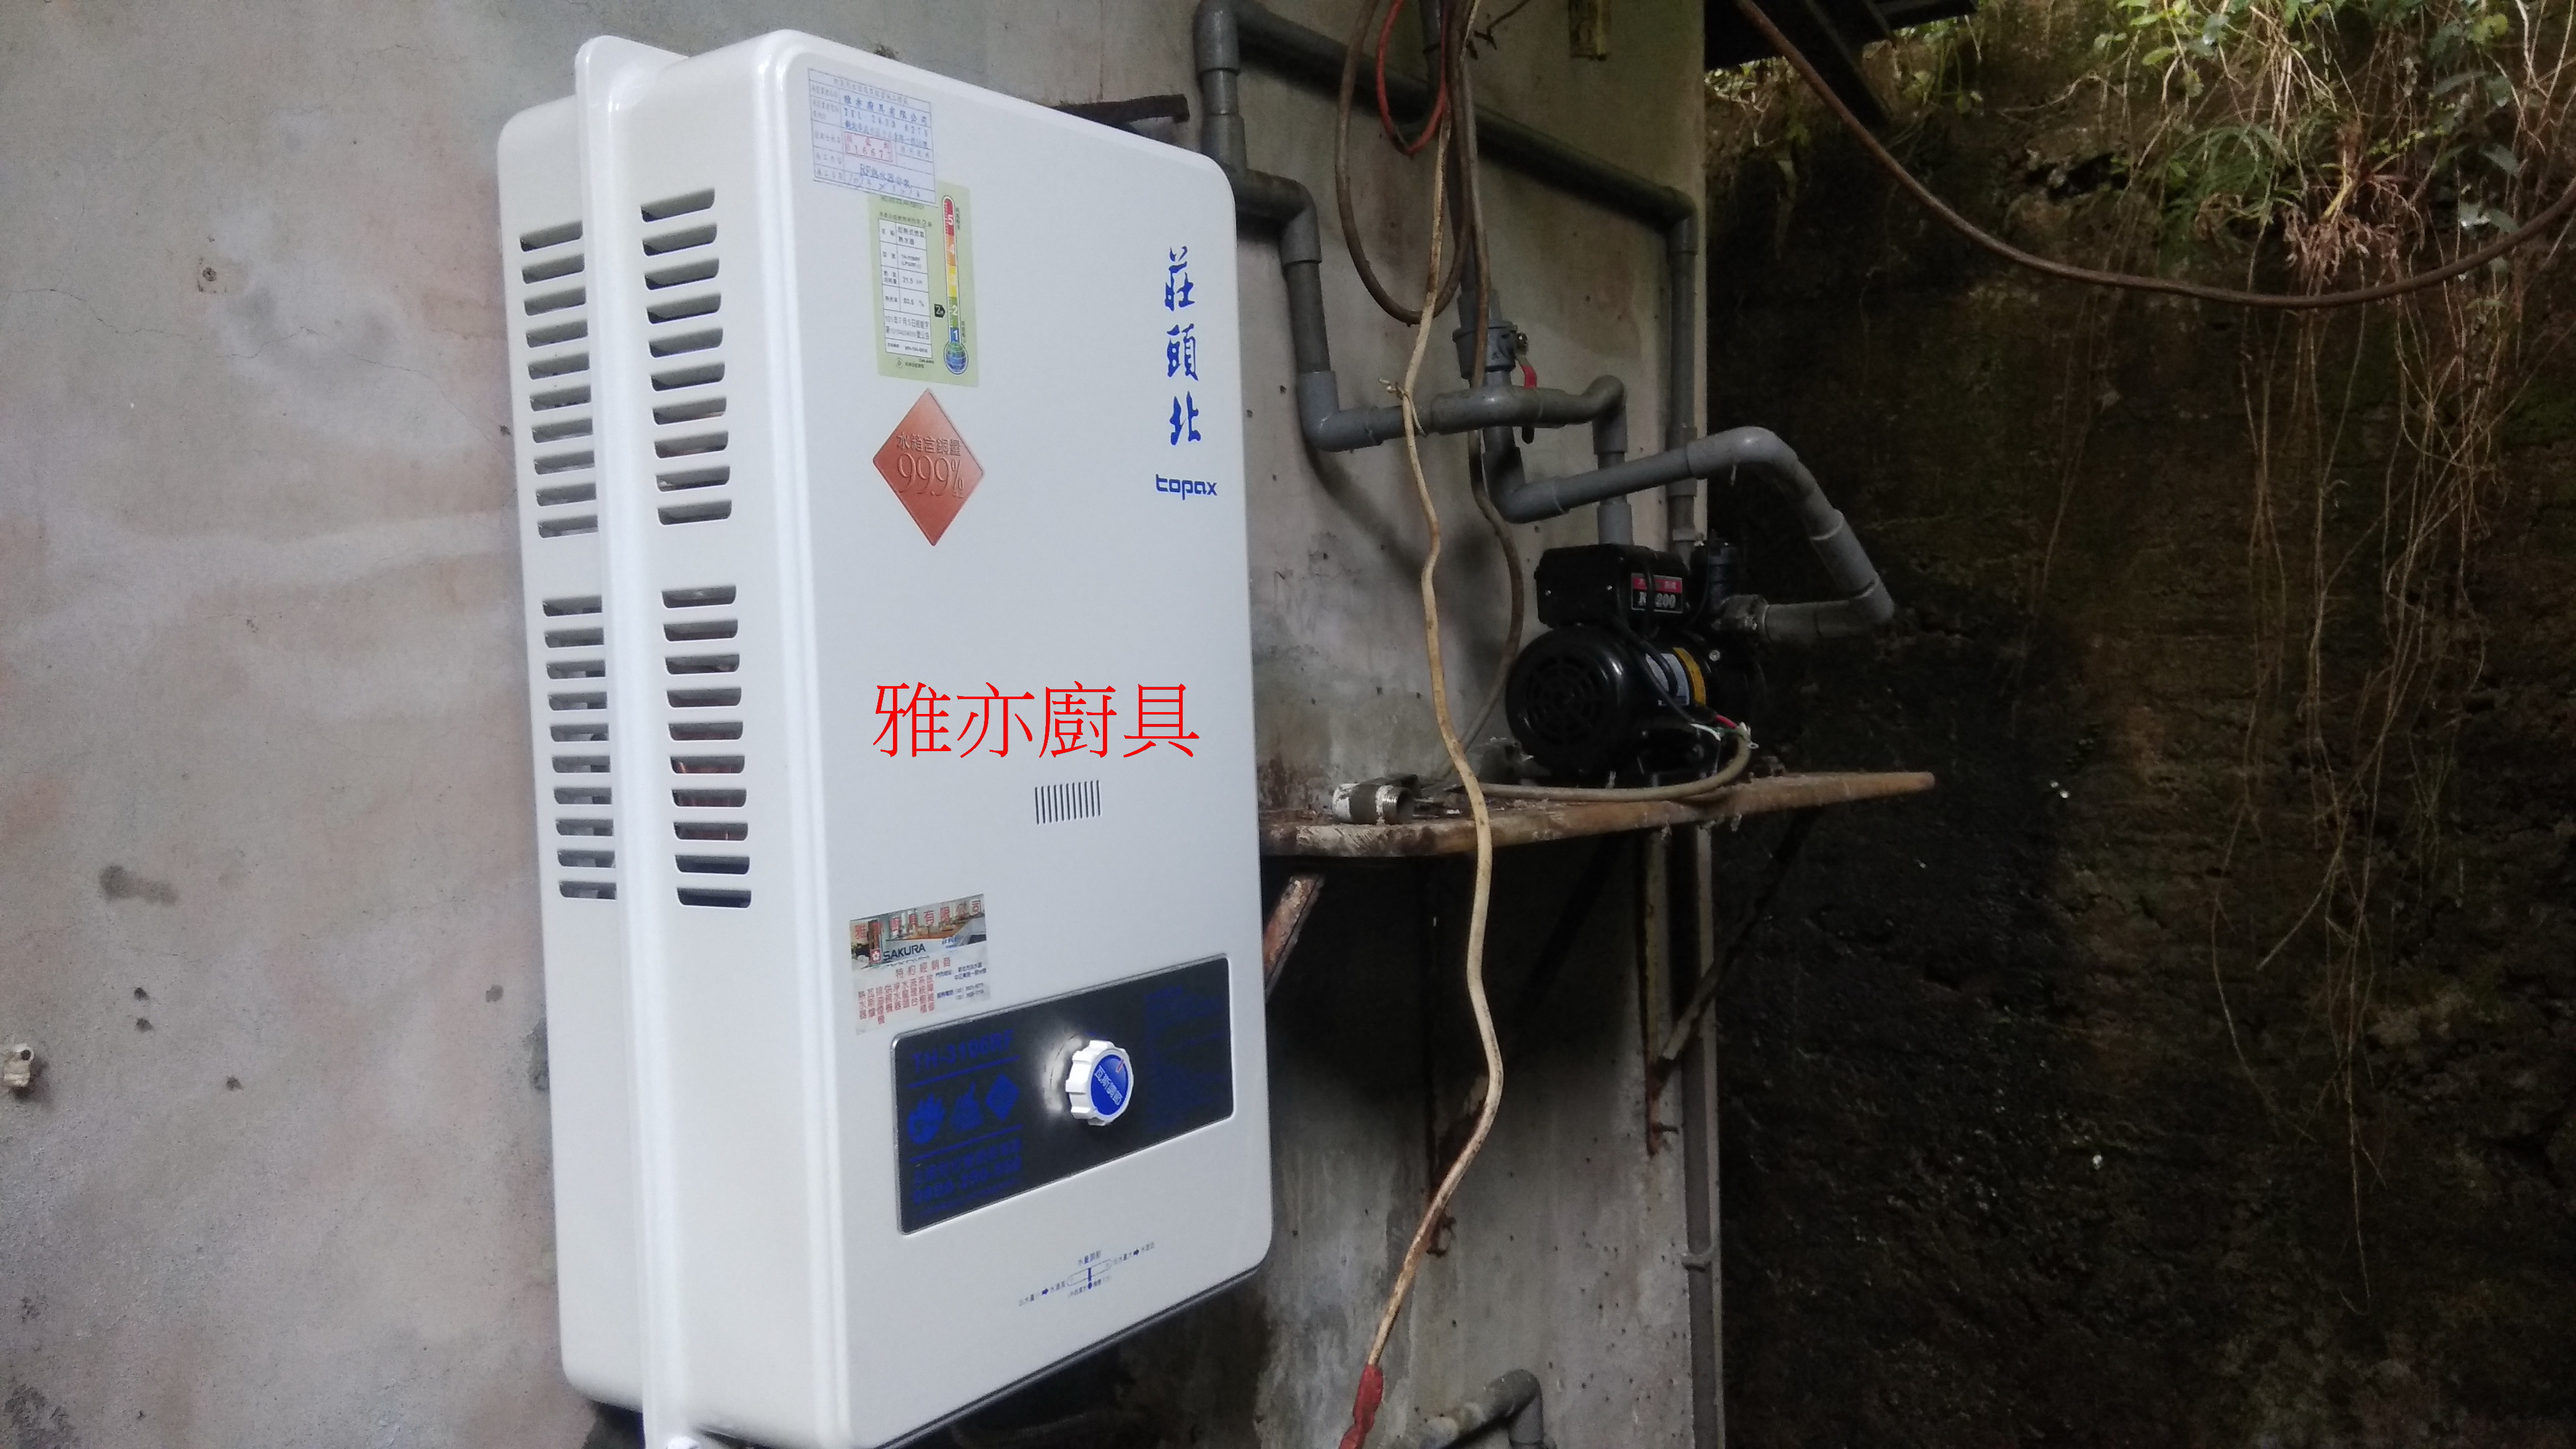 莊頭北熱水器TH-3106RF 10L屋外型熱水器.jpg